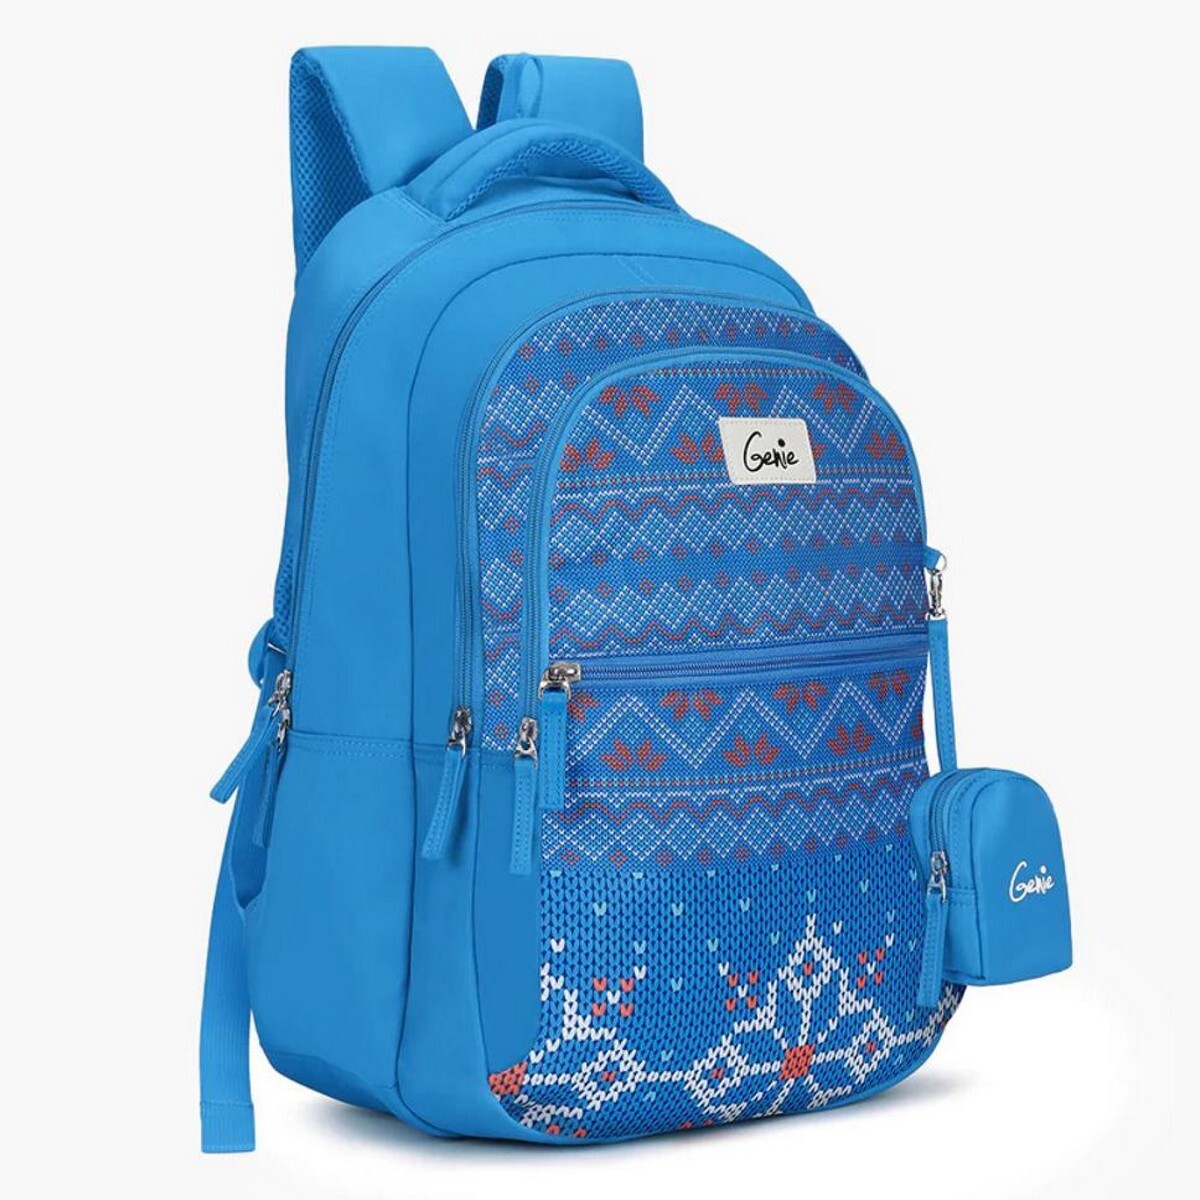 Genie Backpack Nova 19inch Blue